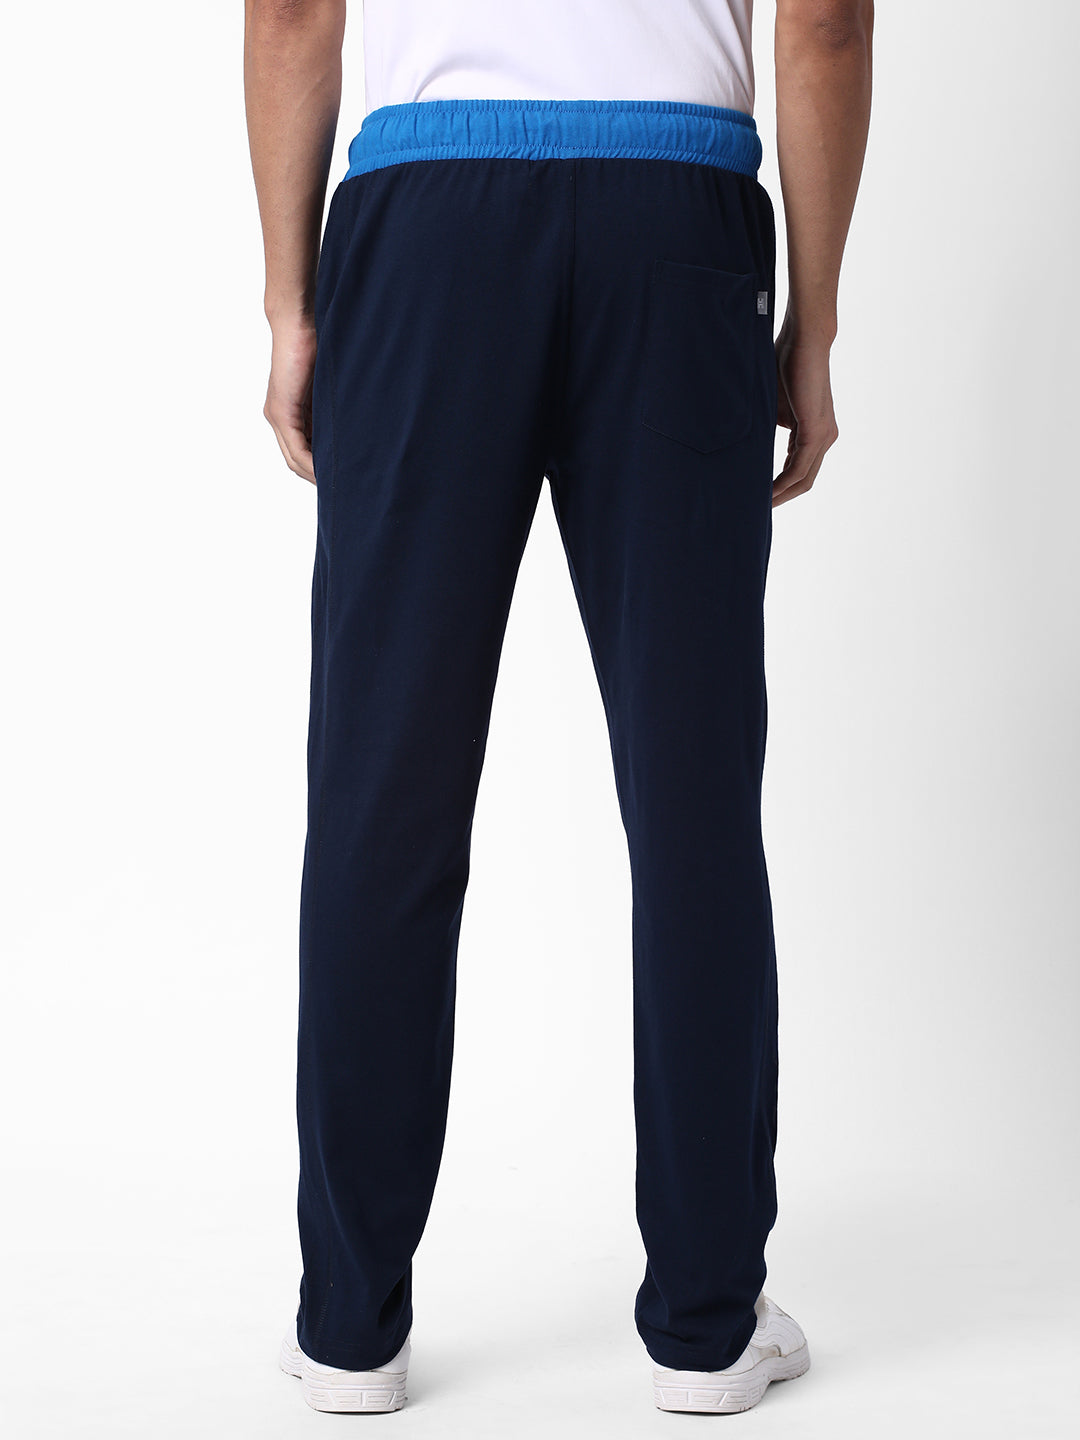 Buy Men's Navy Slim Fit Track Pants